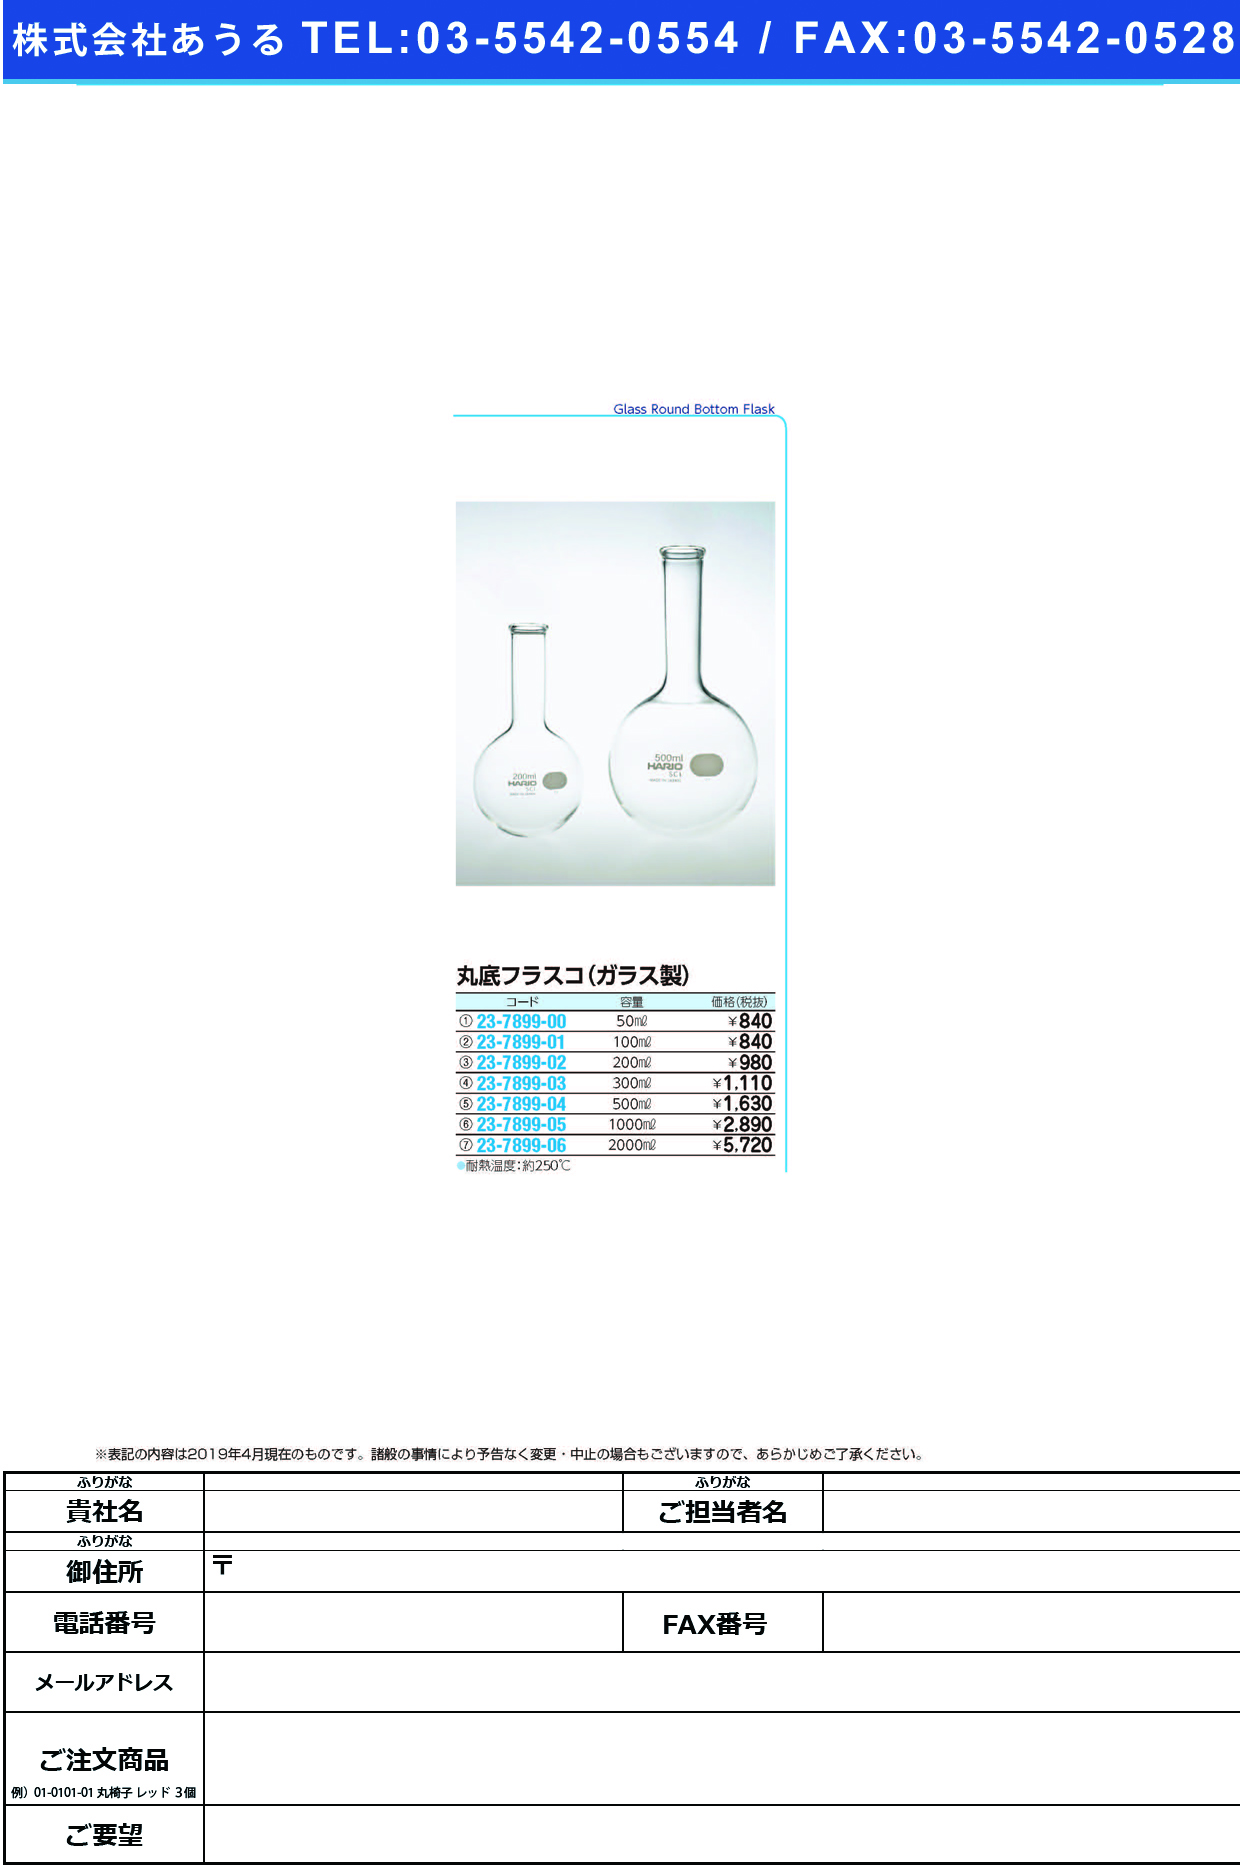 (23-7899-05)丸底フラスコ（ガラス製） 1000ML ﾏﾙｿﾞｺﾌﾗｽｺ(ｶﾞﾗｽｾｲ)【1個単位】【2019年カタログ商品】